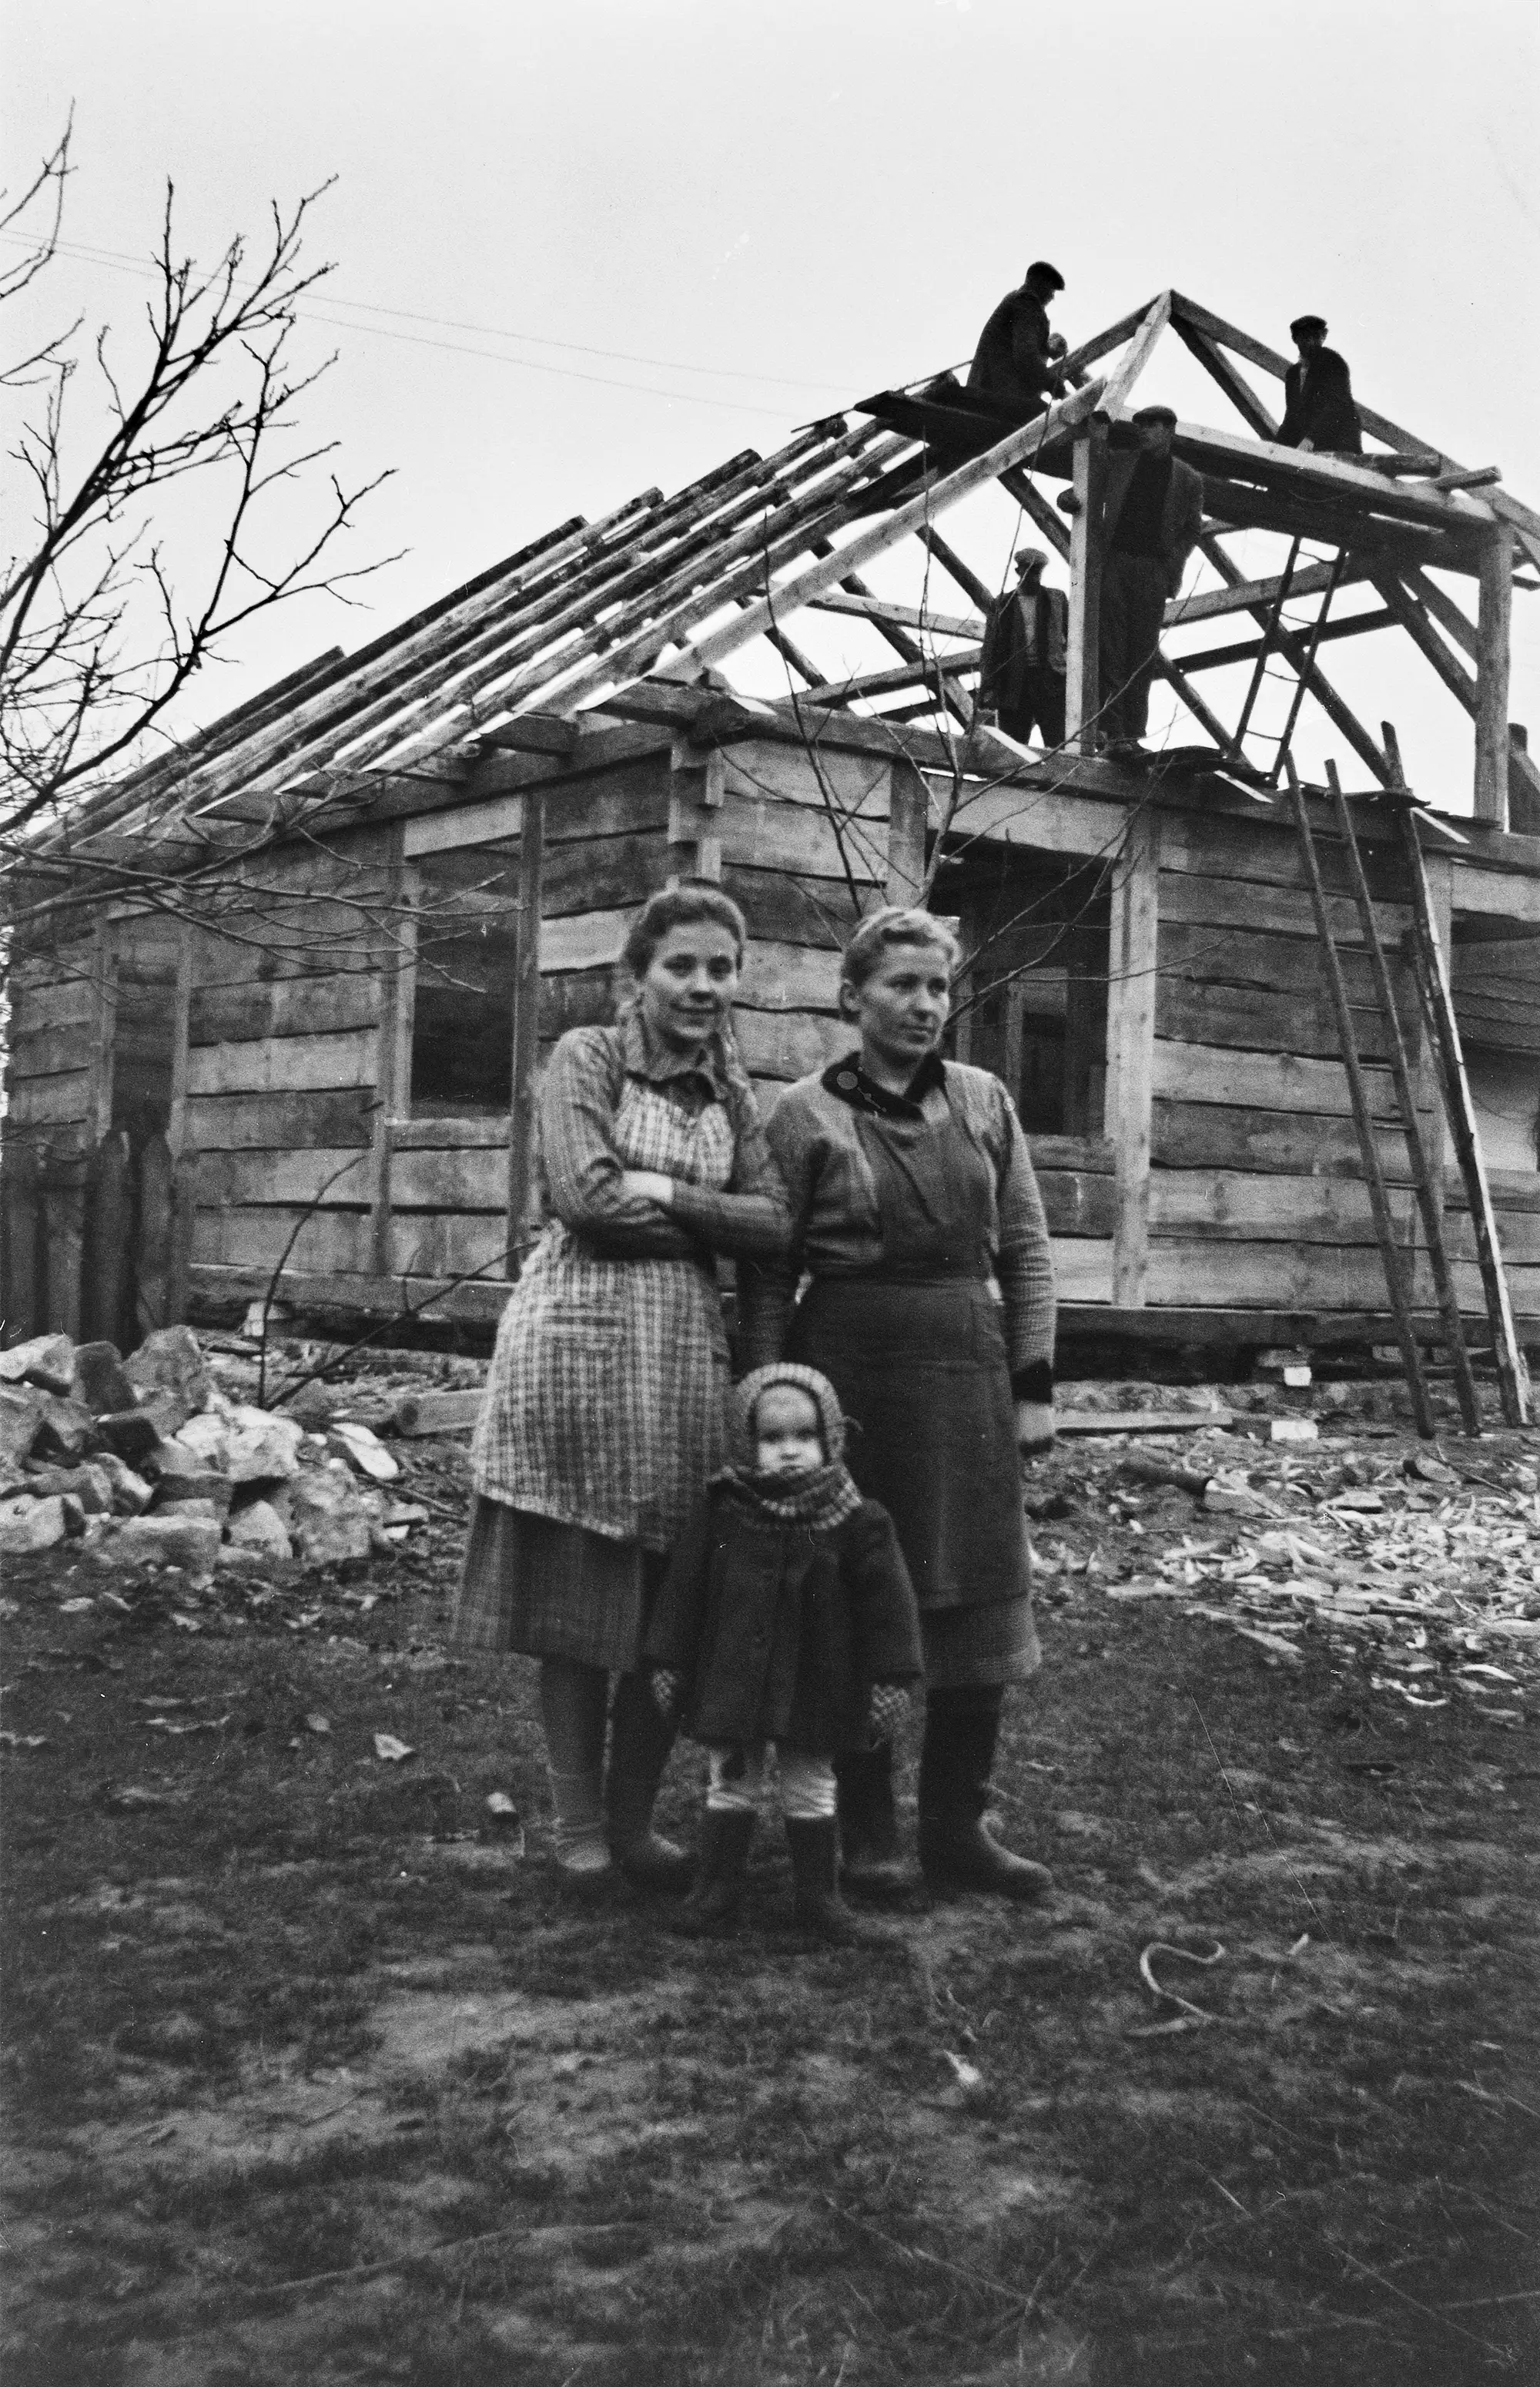 dwie kobiety i dziecko stojące na podwórzu, w tle budowa konstrukcji drewnianego domu, na konstrukcji stoją trzej mężczyźni